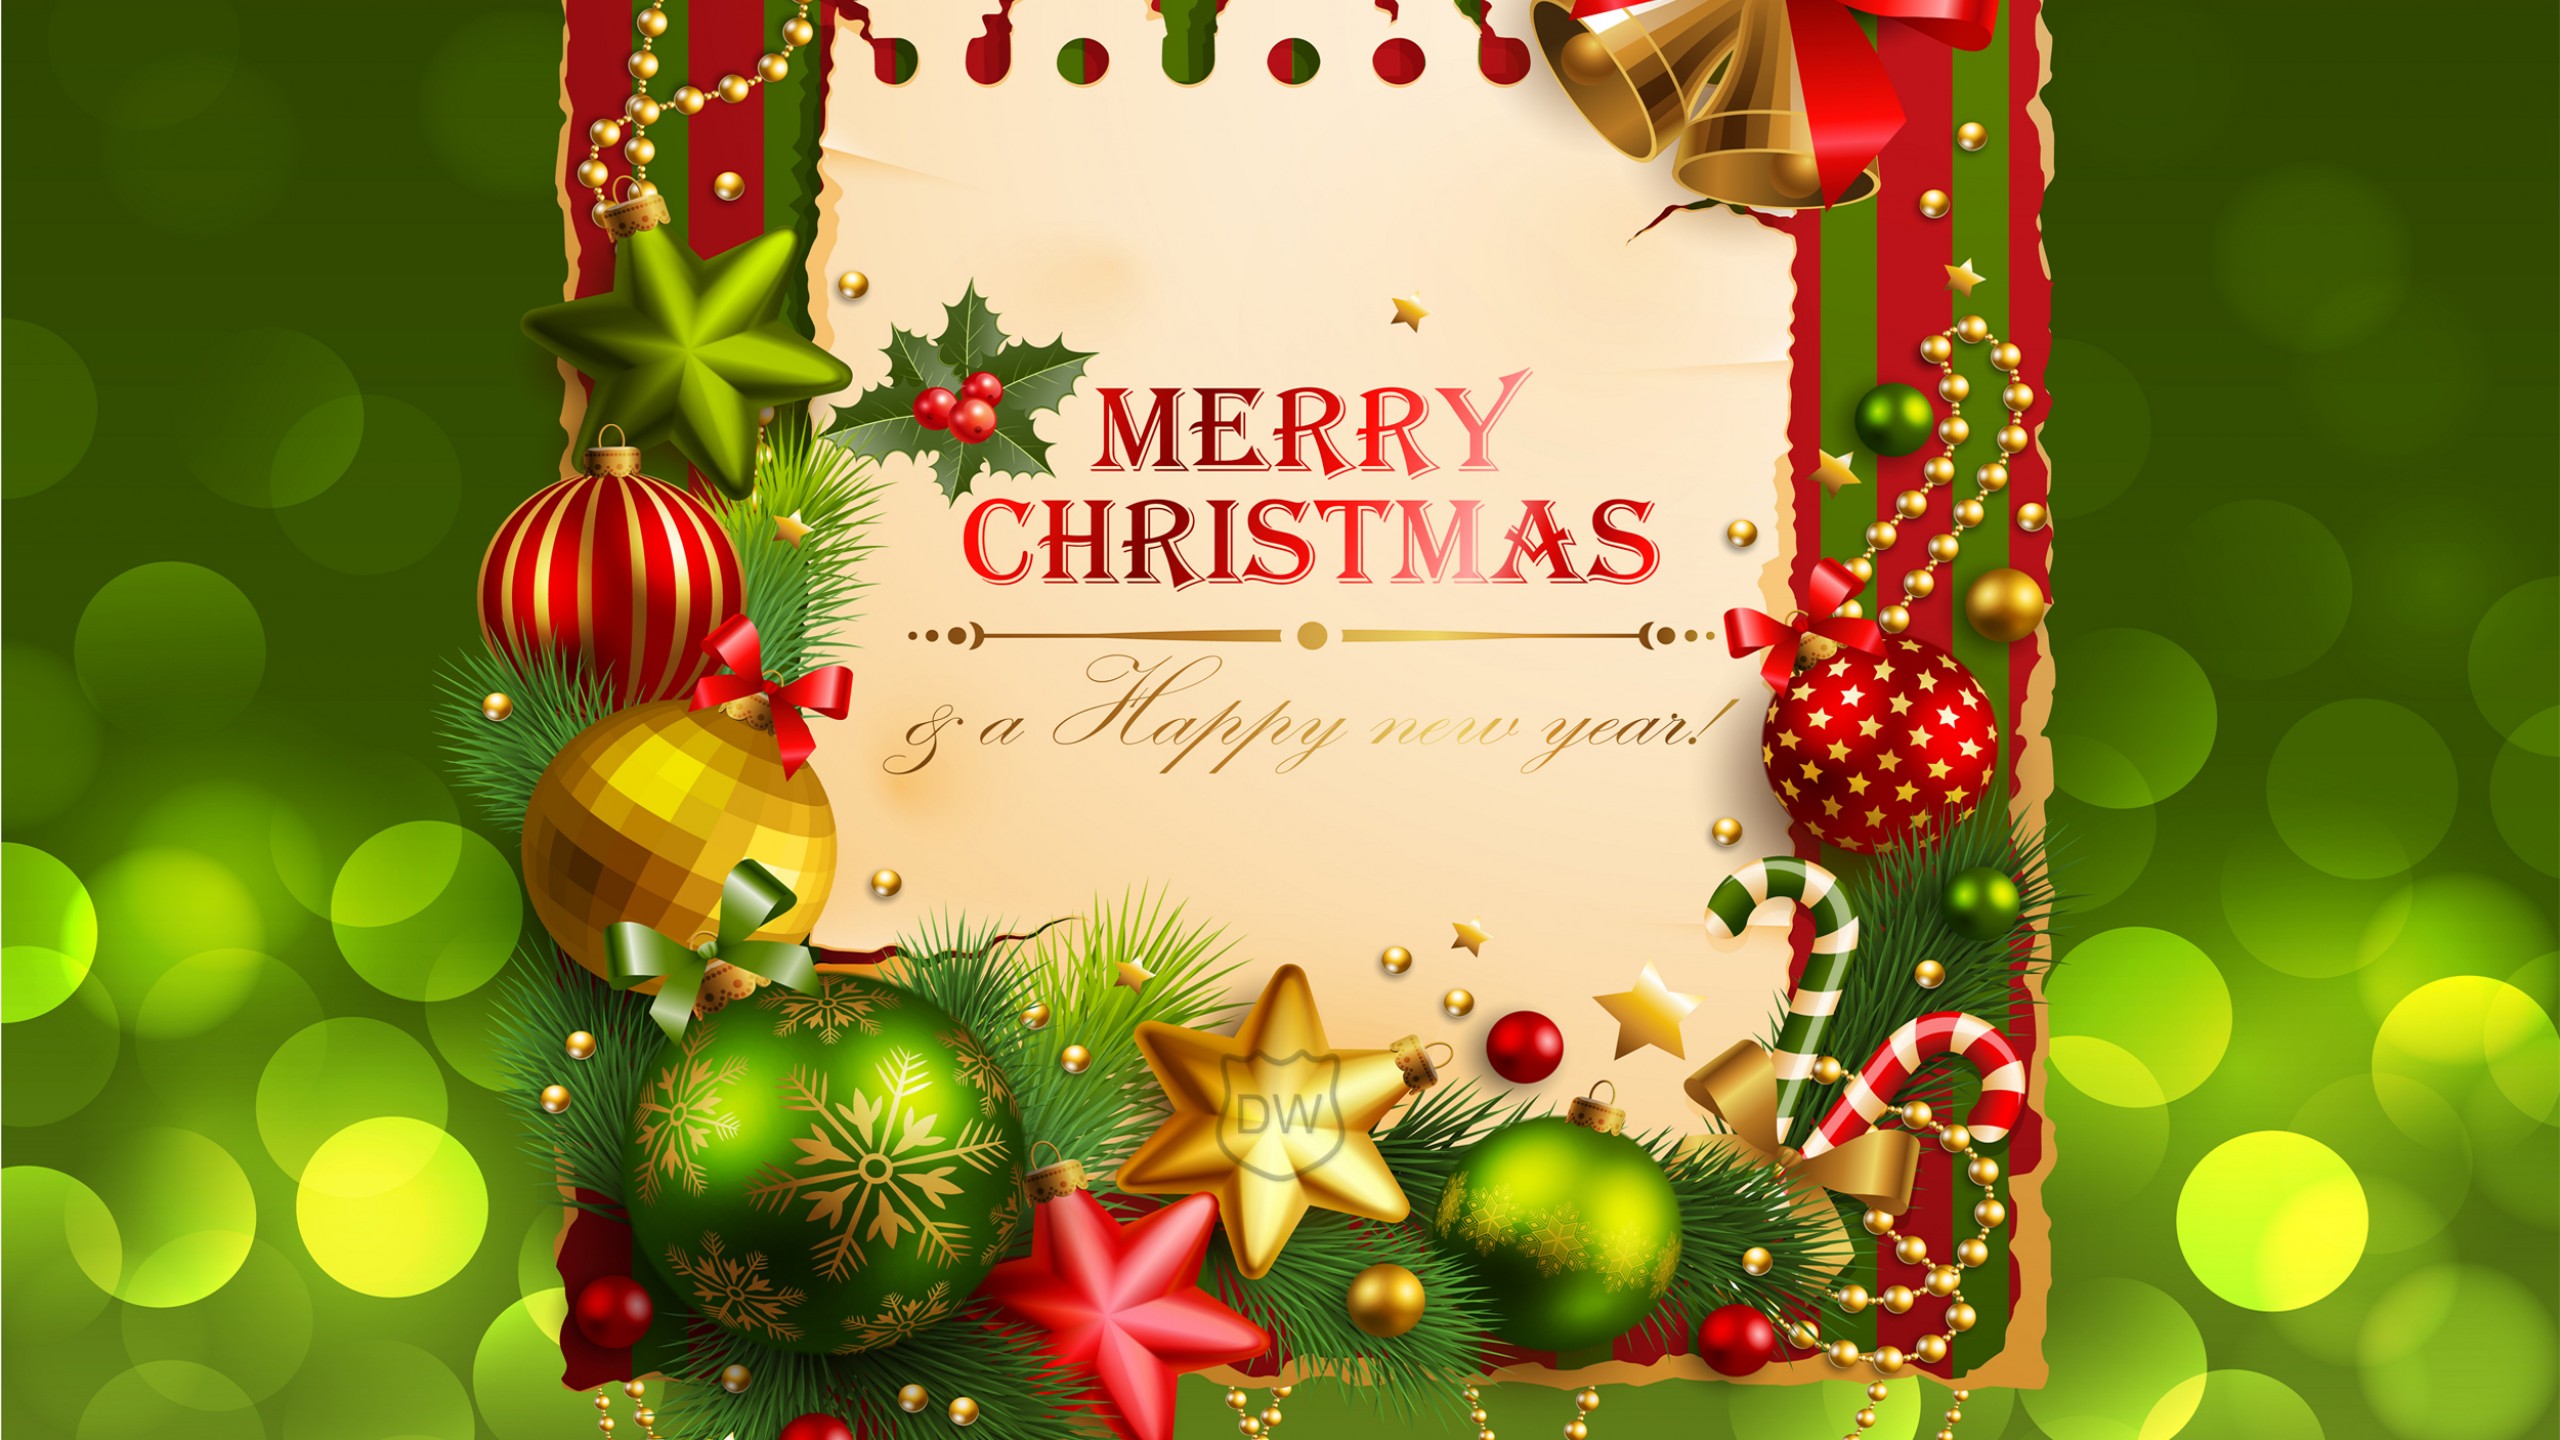 행복한 크리스마스의 hd 벽지,크리스마스 장식,크리스마스,크리스마스 장식,크리스마스 이브,인사말 카드